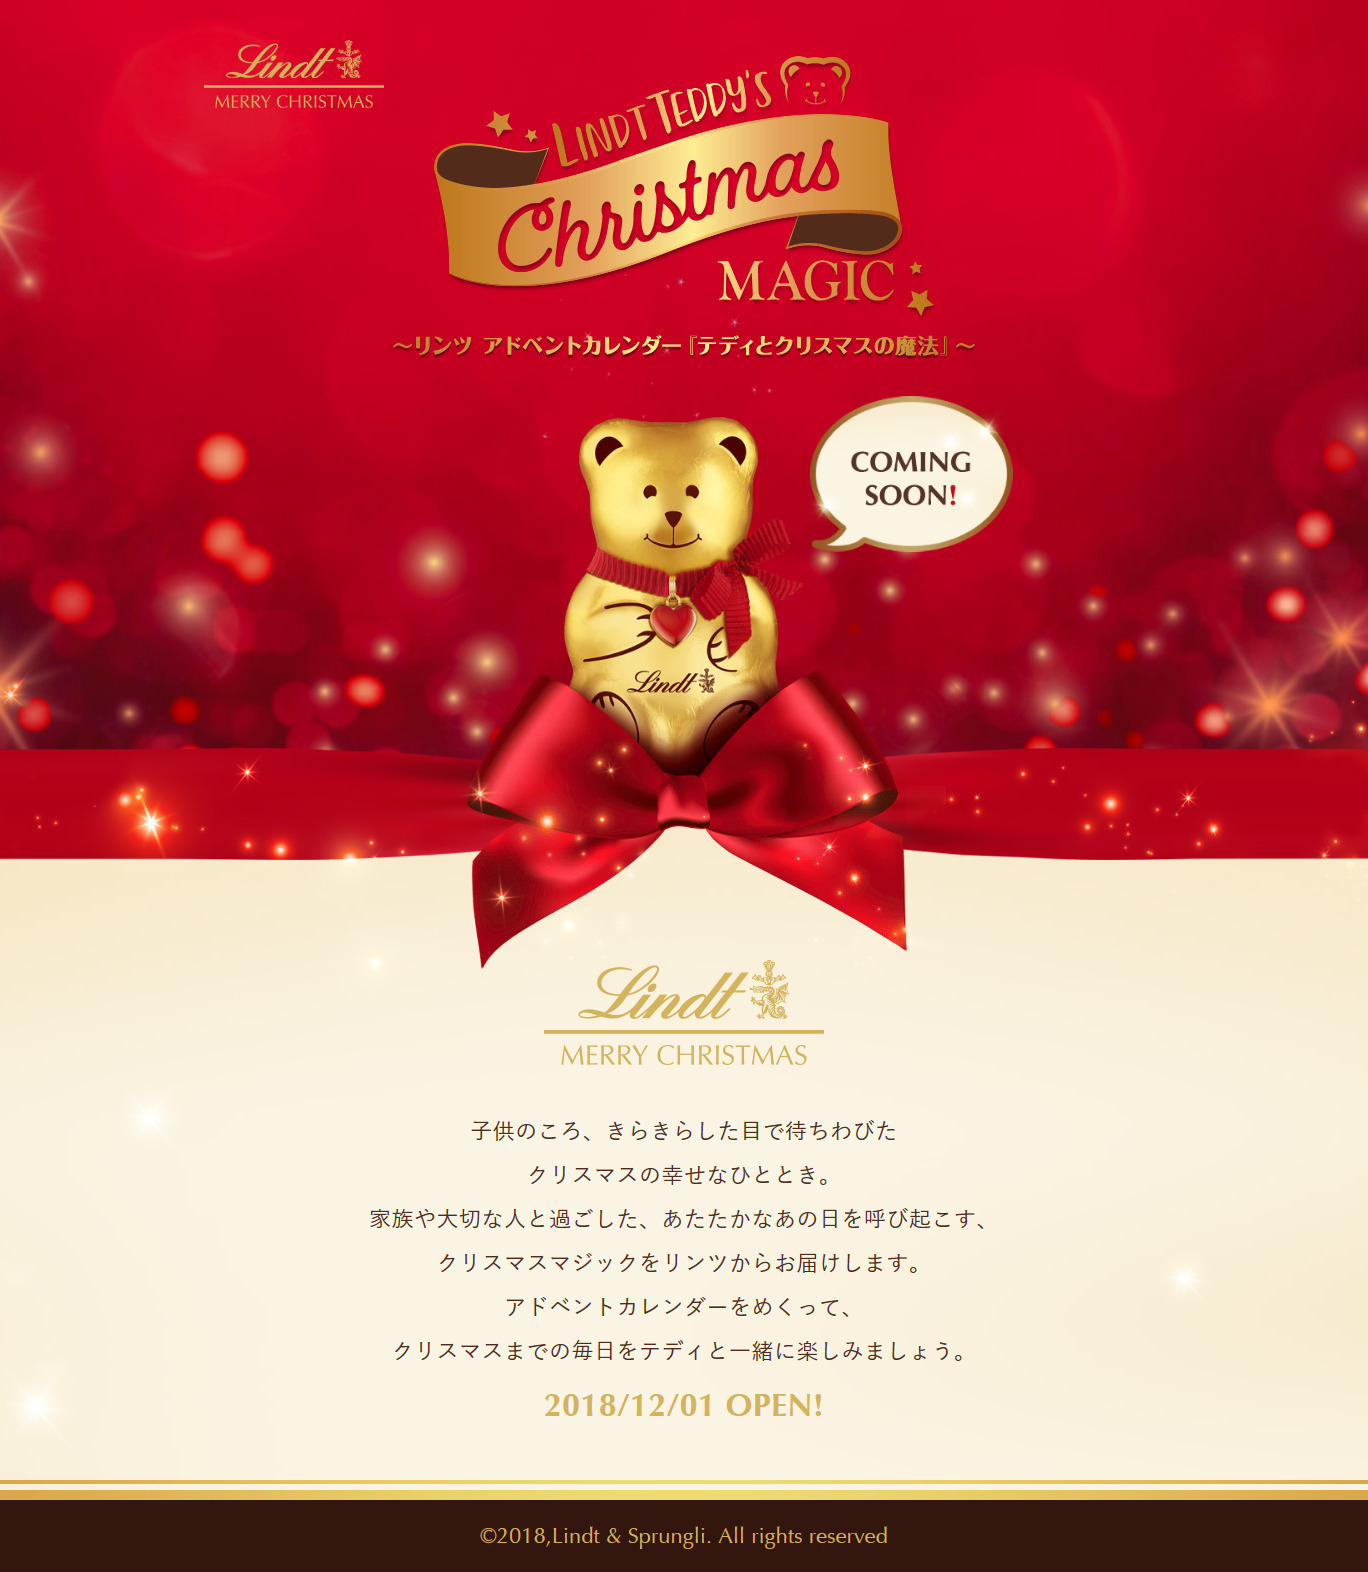 「伝説のすた丼屋」で平成最後のクリスマスを　
12月12日より「極盛がっツリーすた丼2018」を全国発売　
クリぼっちでもパーティー気分！